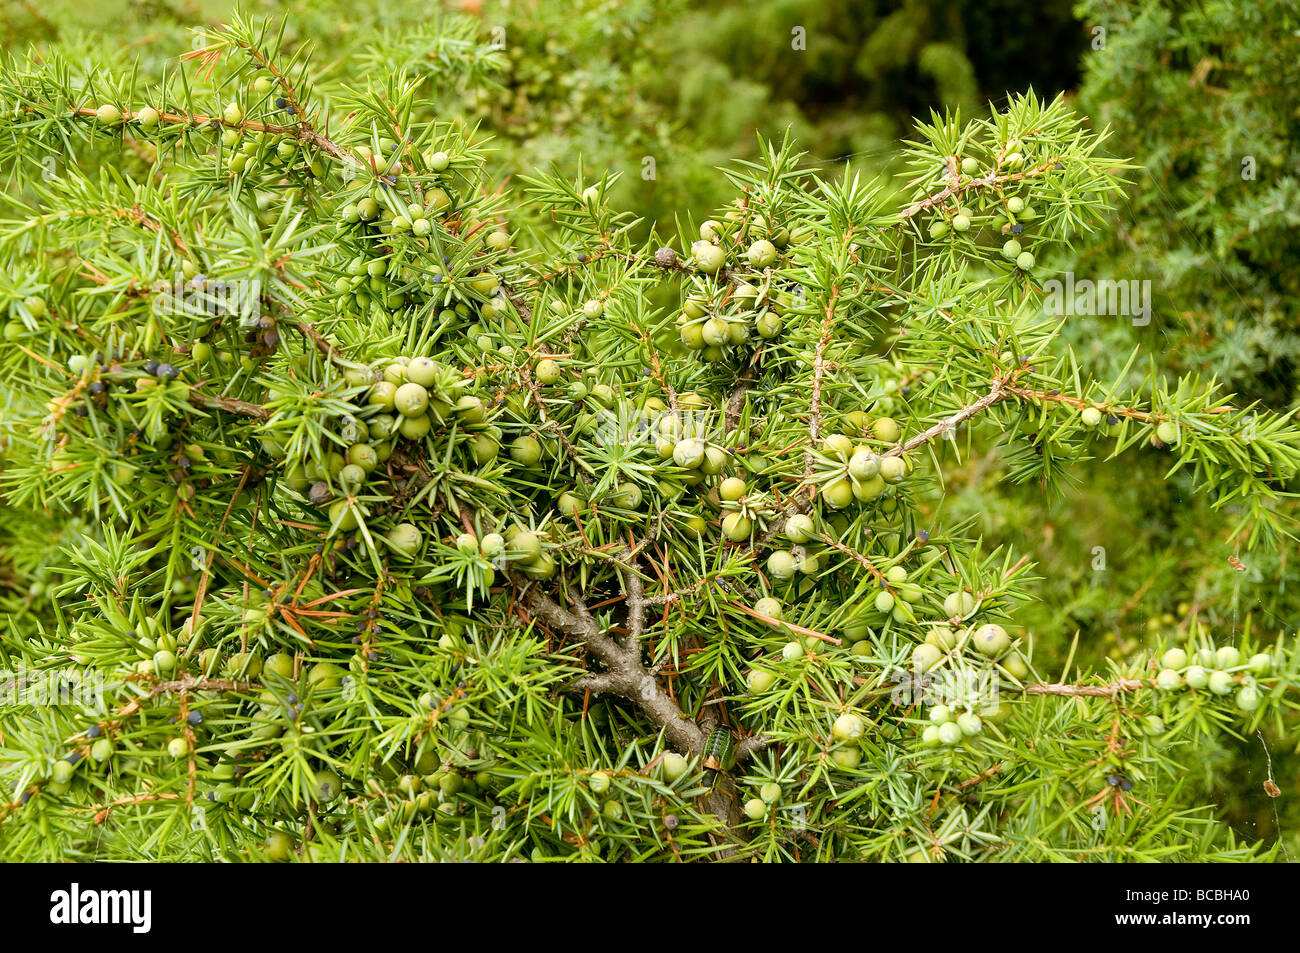 a juniper plant Stock Photo